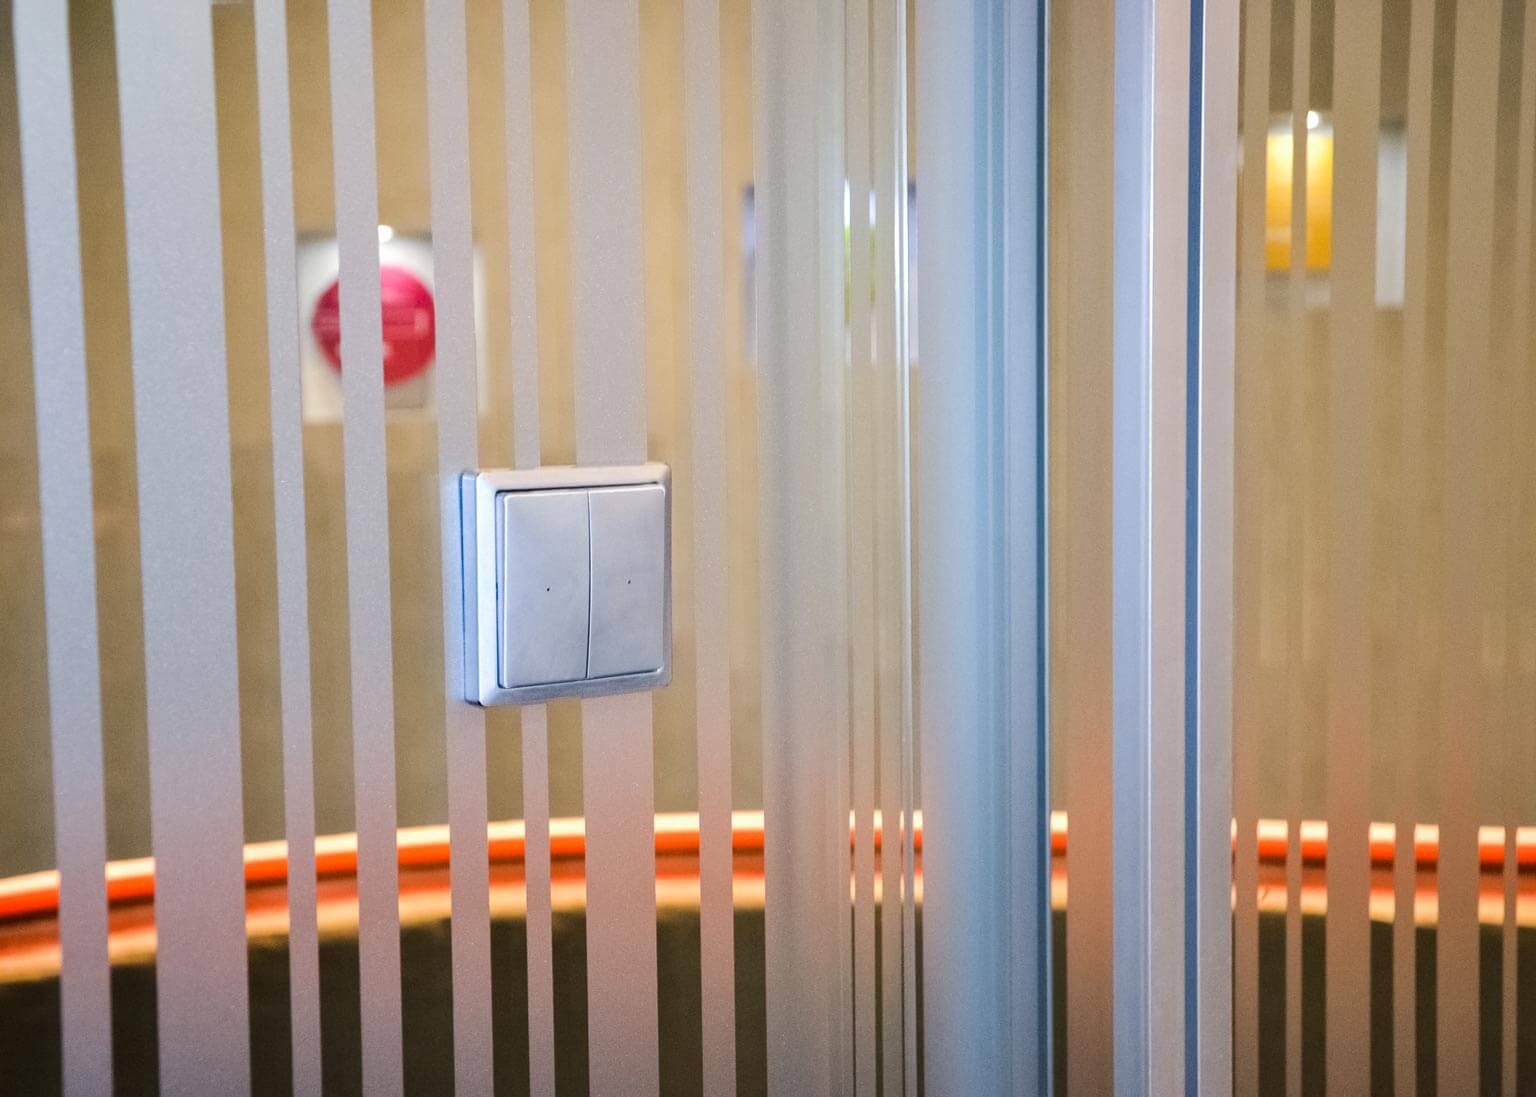 dettaglio interruttore luce wireless applicato su vetrata disegno franz siccardi sala riunione sede repower headquarter milano centro